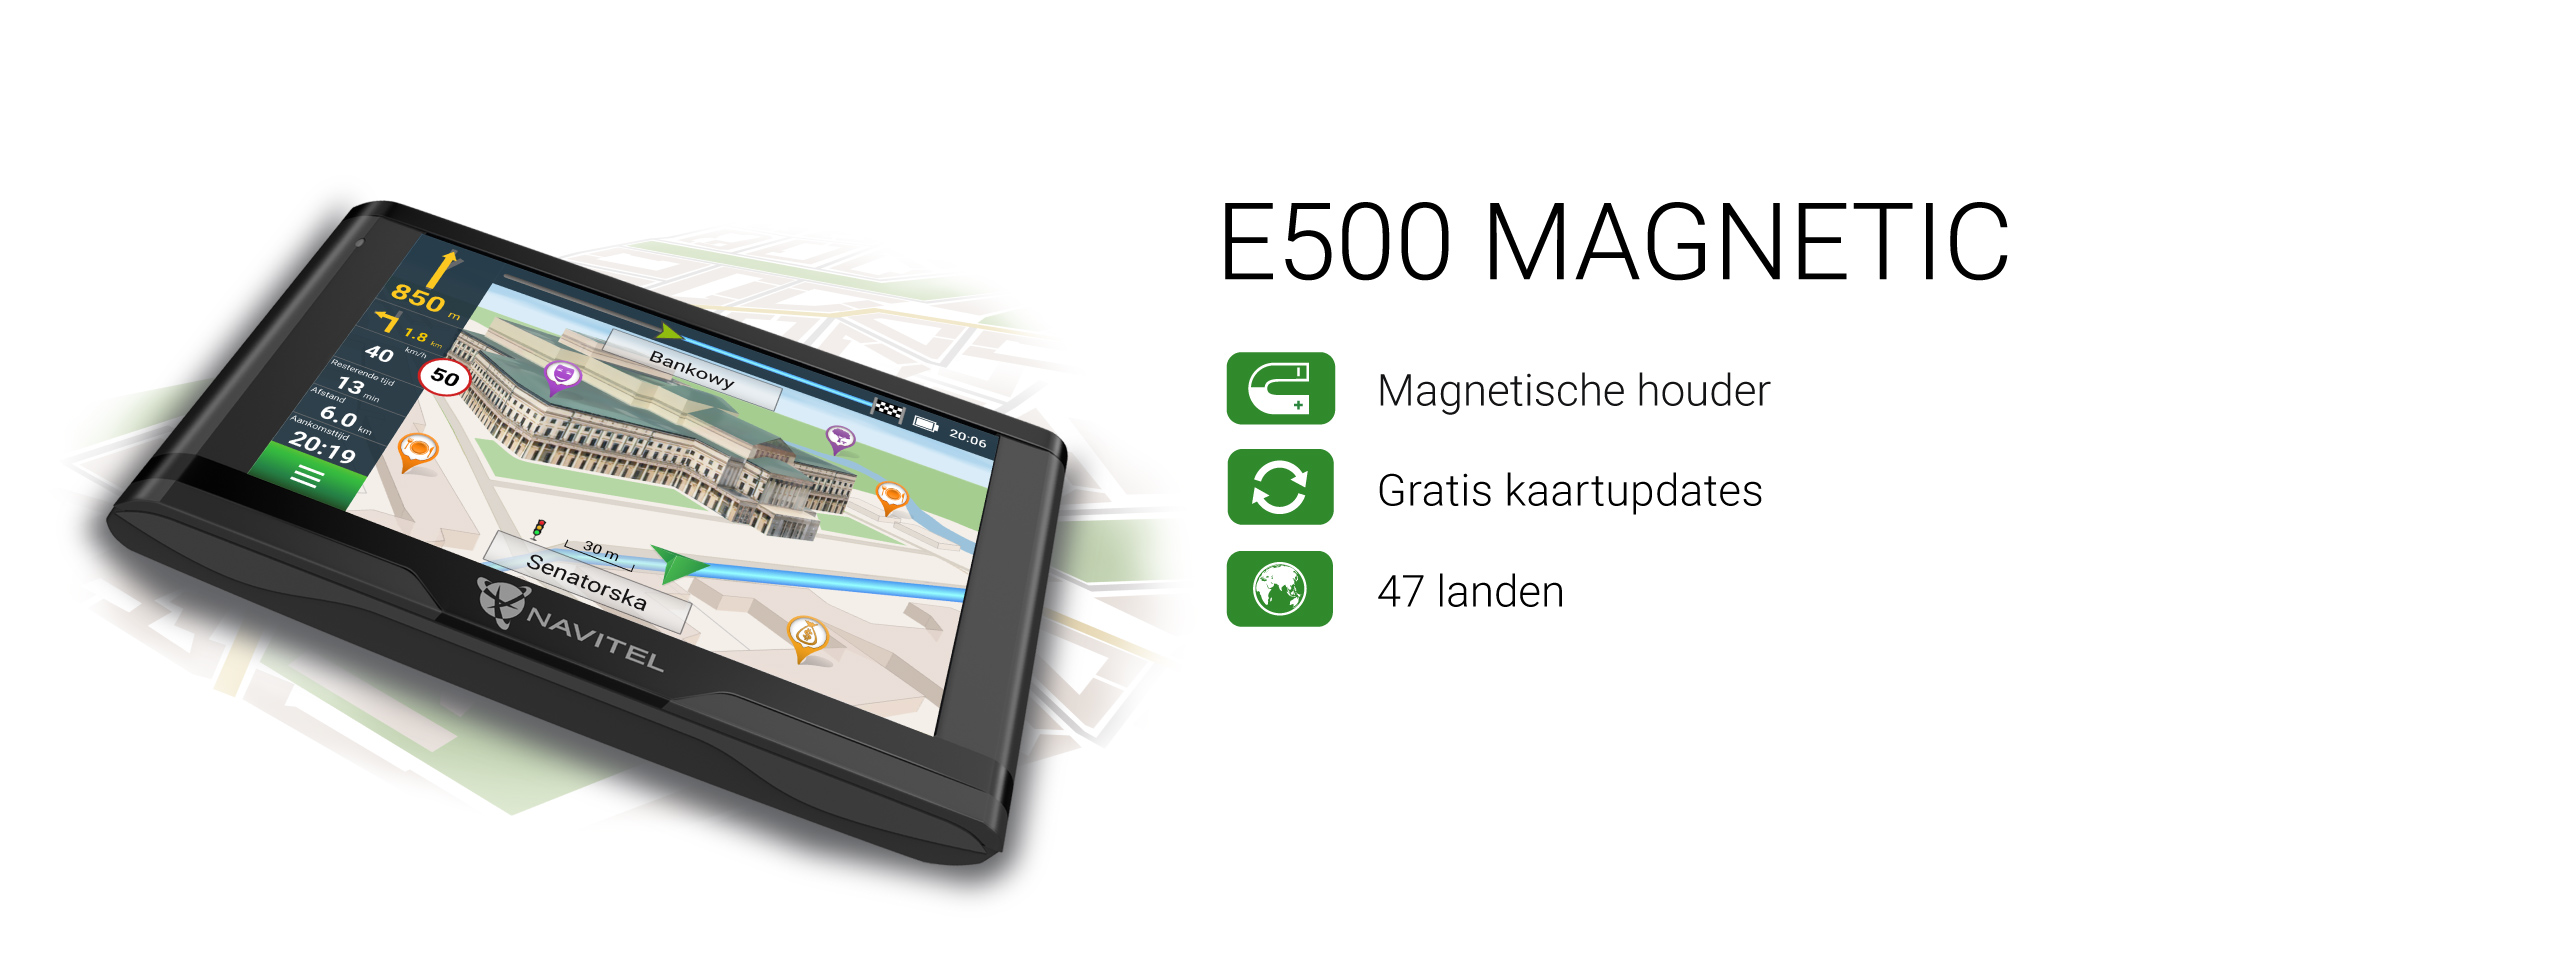 NAVITEL E500 MAGNETIC Persoonlijk navigatieapparaat